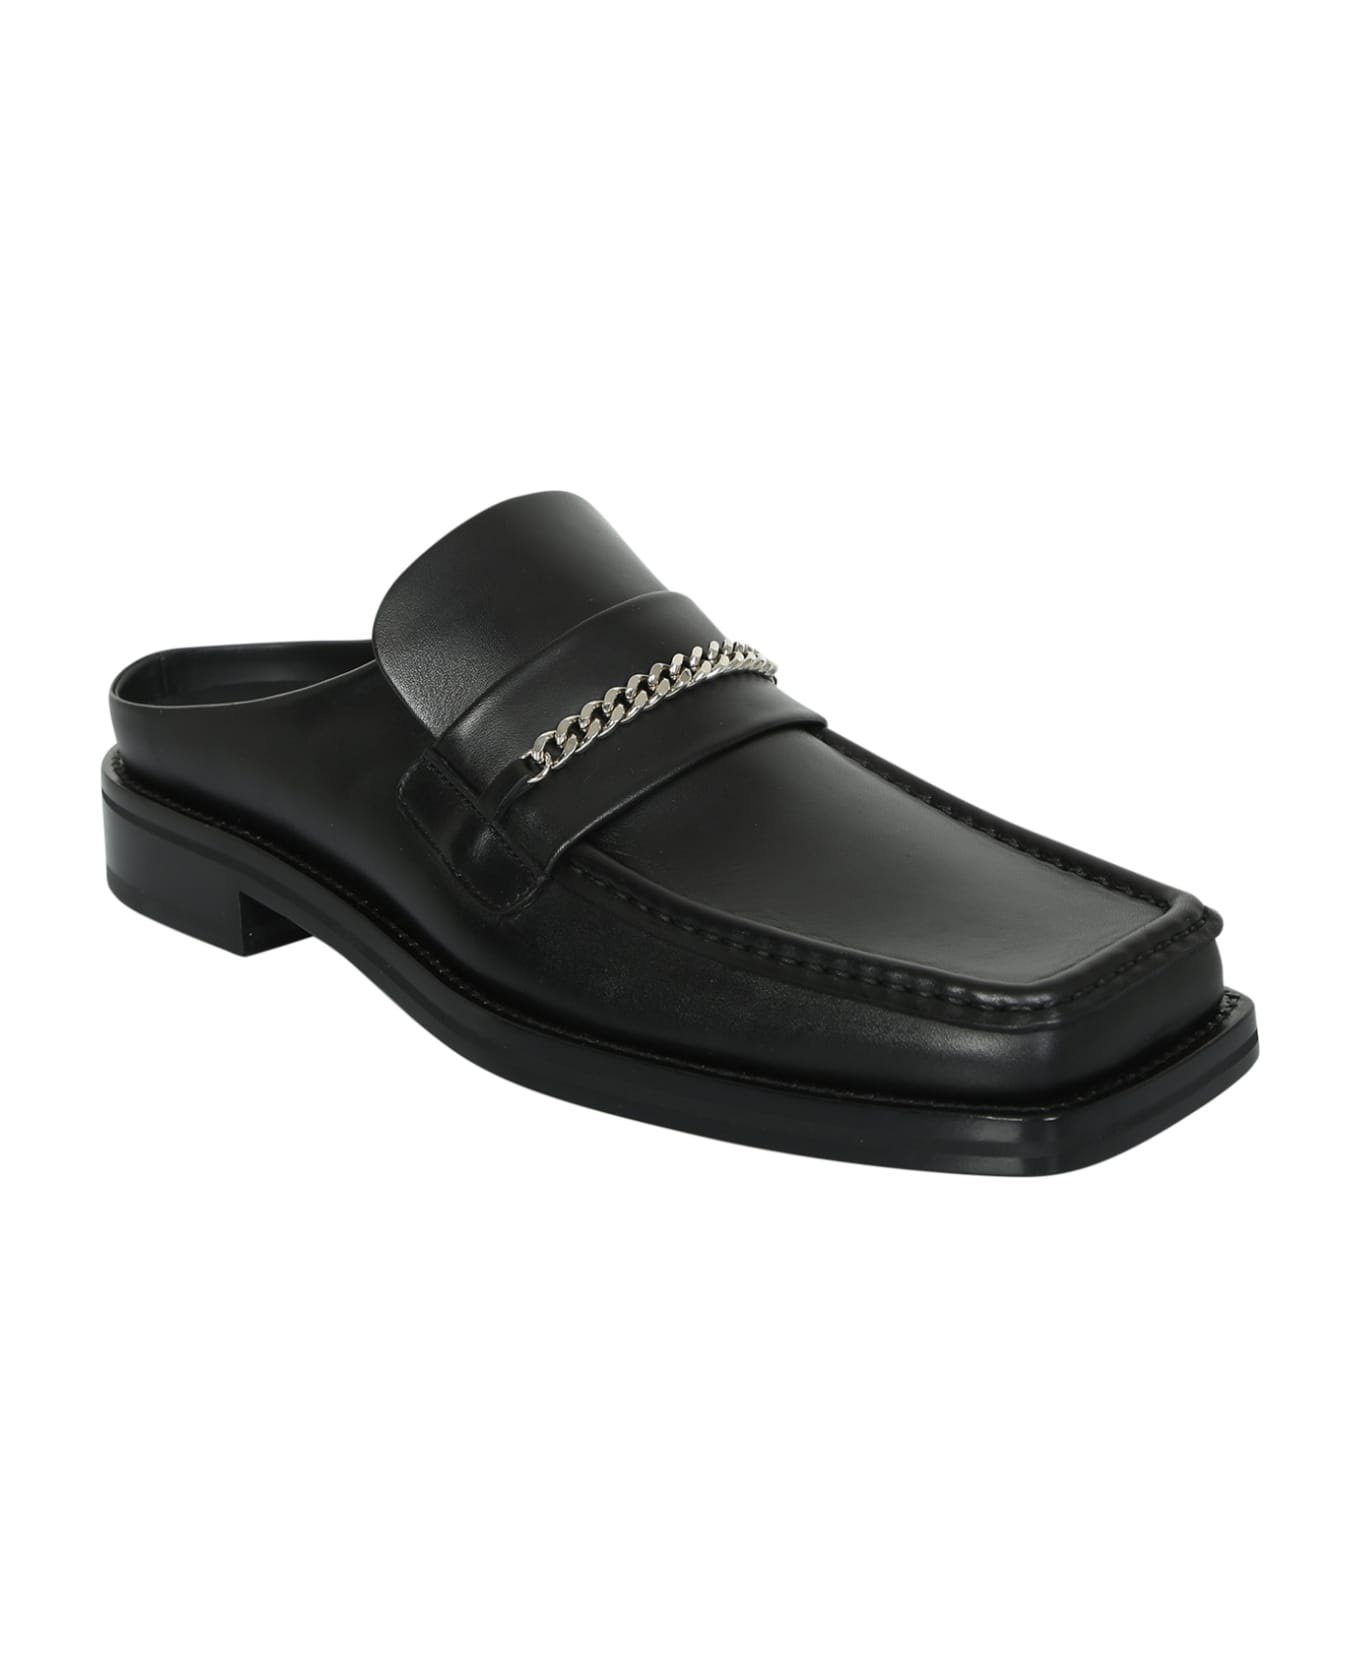 Martine Rose Chain-embellished Slip-on Loafers - Black